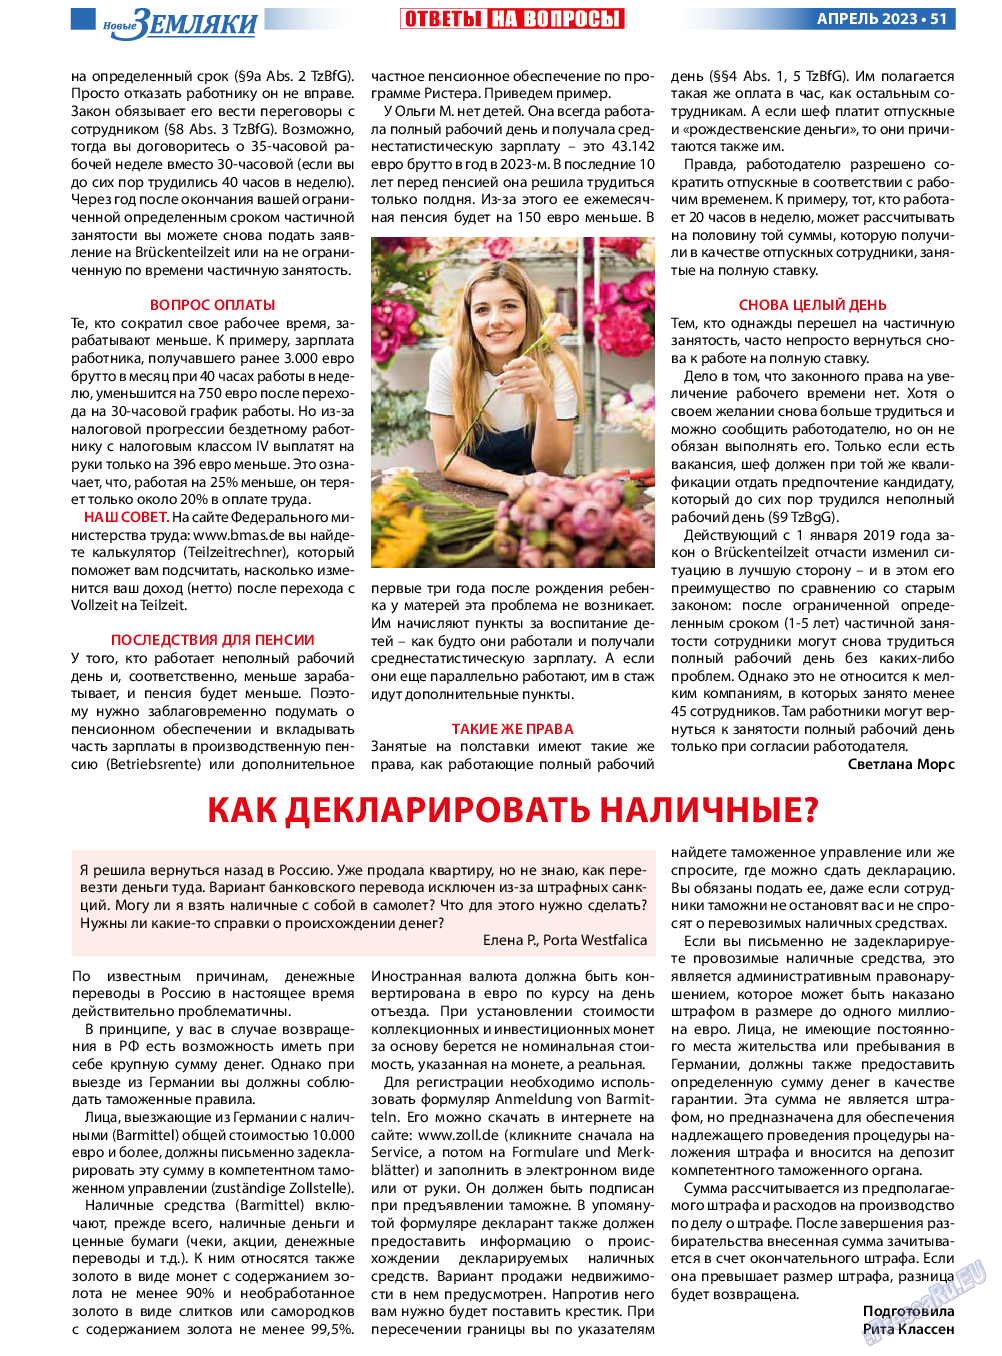 Новые Земляки, газета. 2023 №4 стр.51